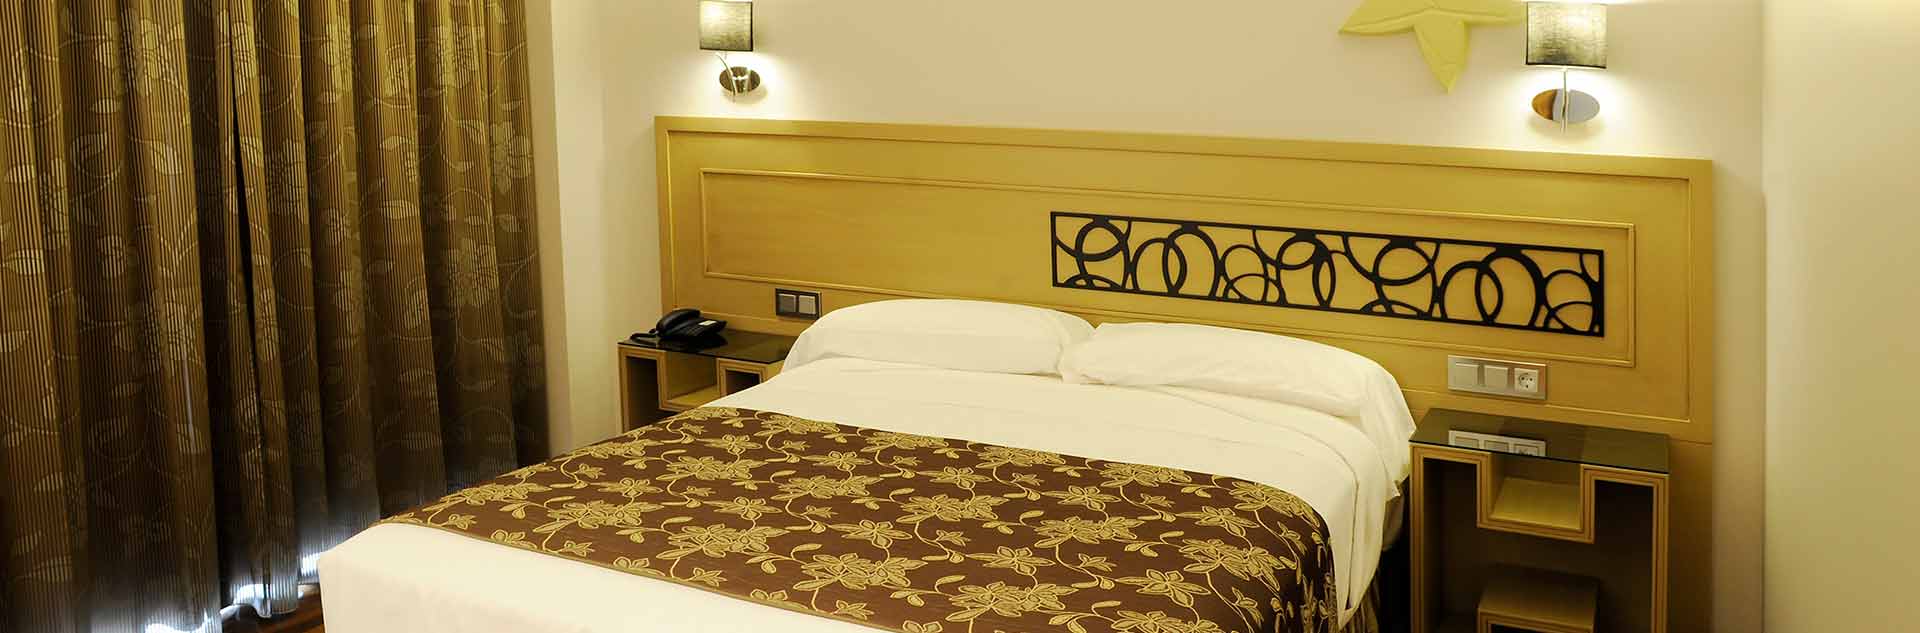 Detalle habitación hotel Cumbria